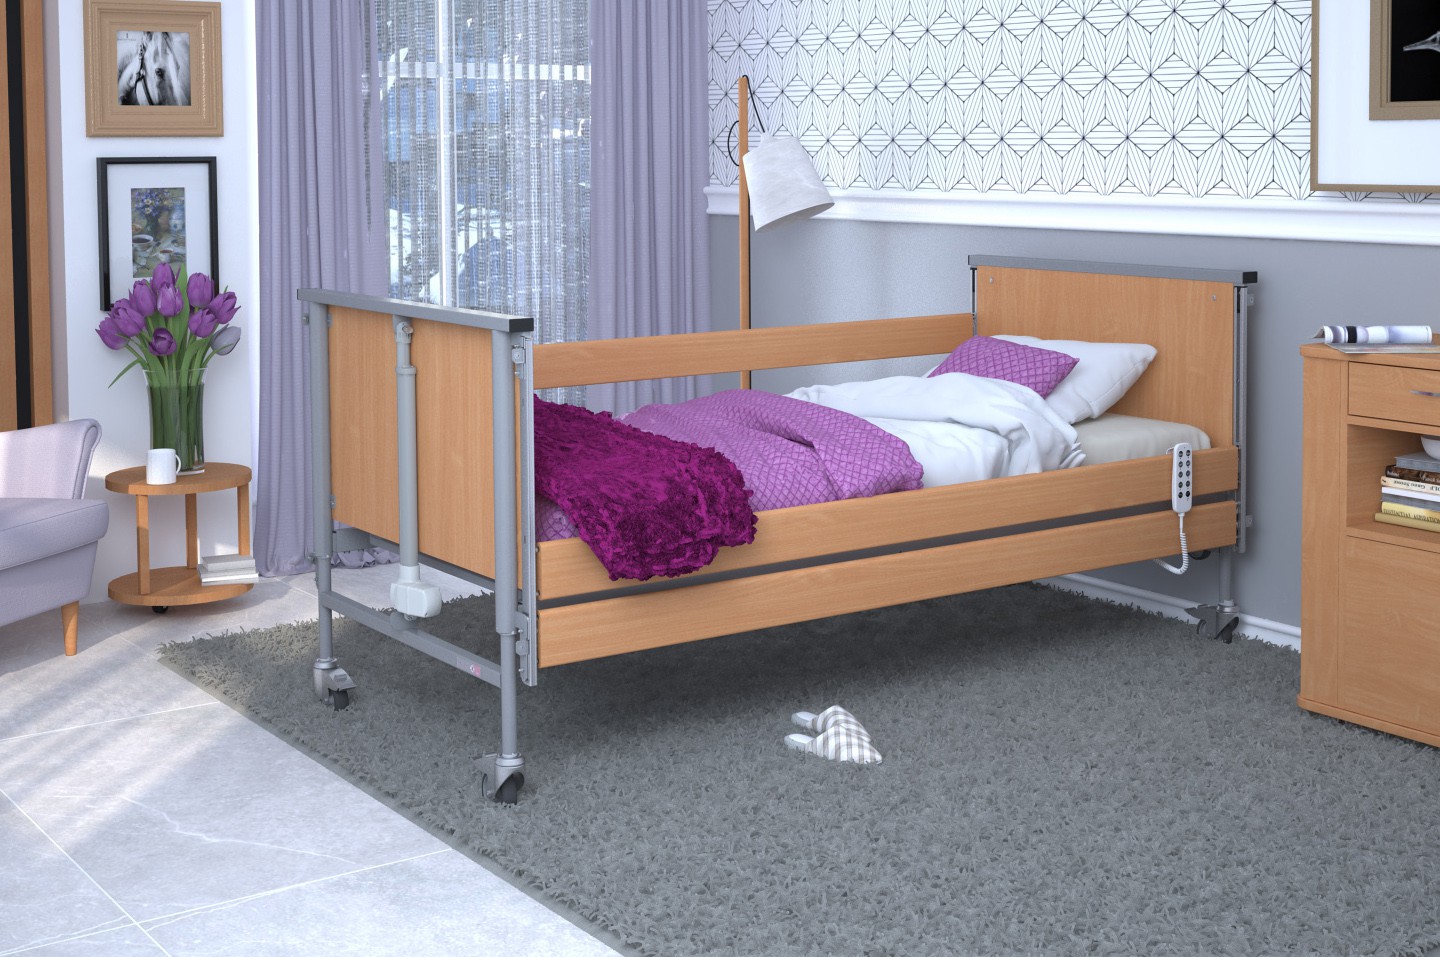 Łóżko rehabilitacyjne TAURUS 2 regulowane RehaBed : Rodzaj leża - Drewniane, Standardowe kolory ramy łóżka - Jasny dąb, Stolik typu Tablet: - Tak, Wysięgnik (max odciążenie 80 kg): - Nie